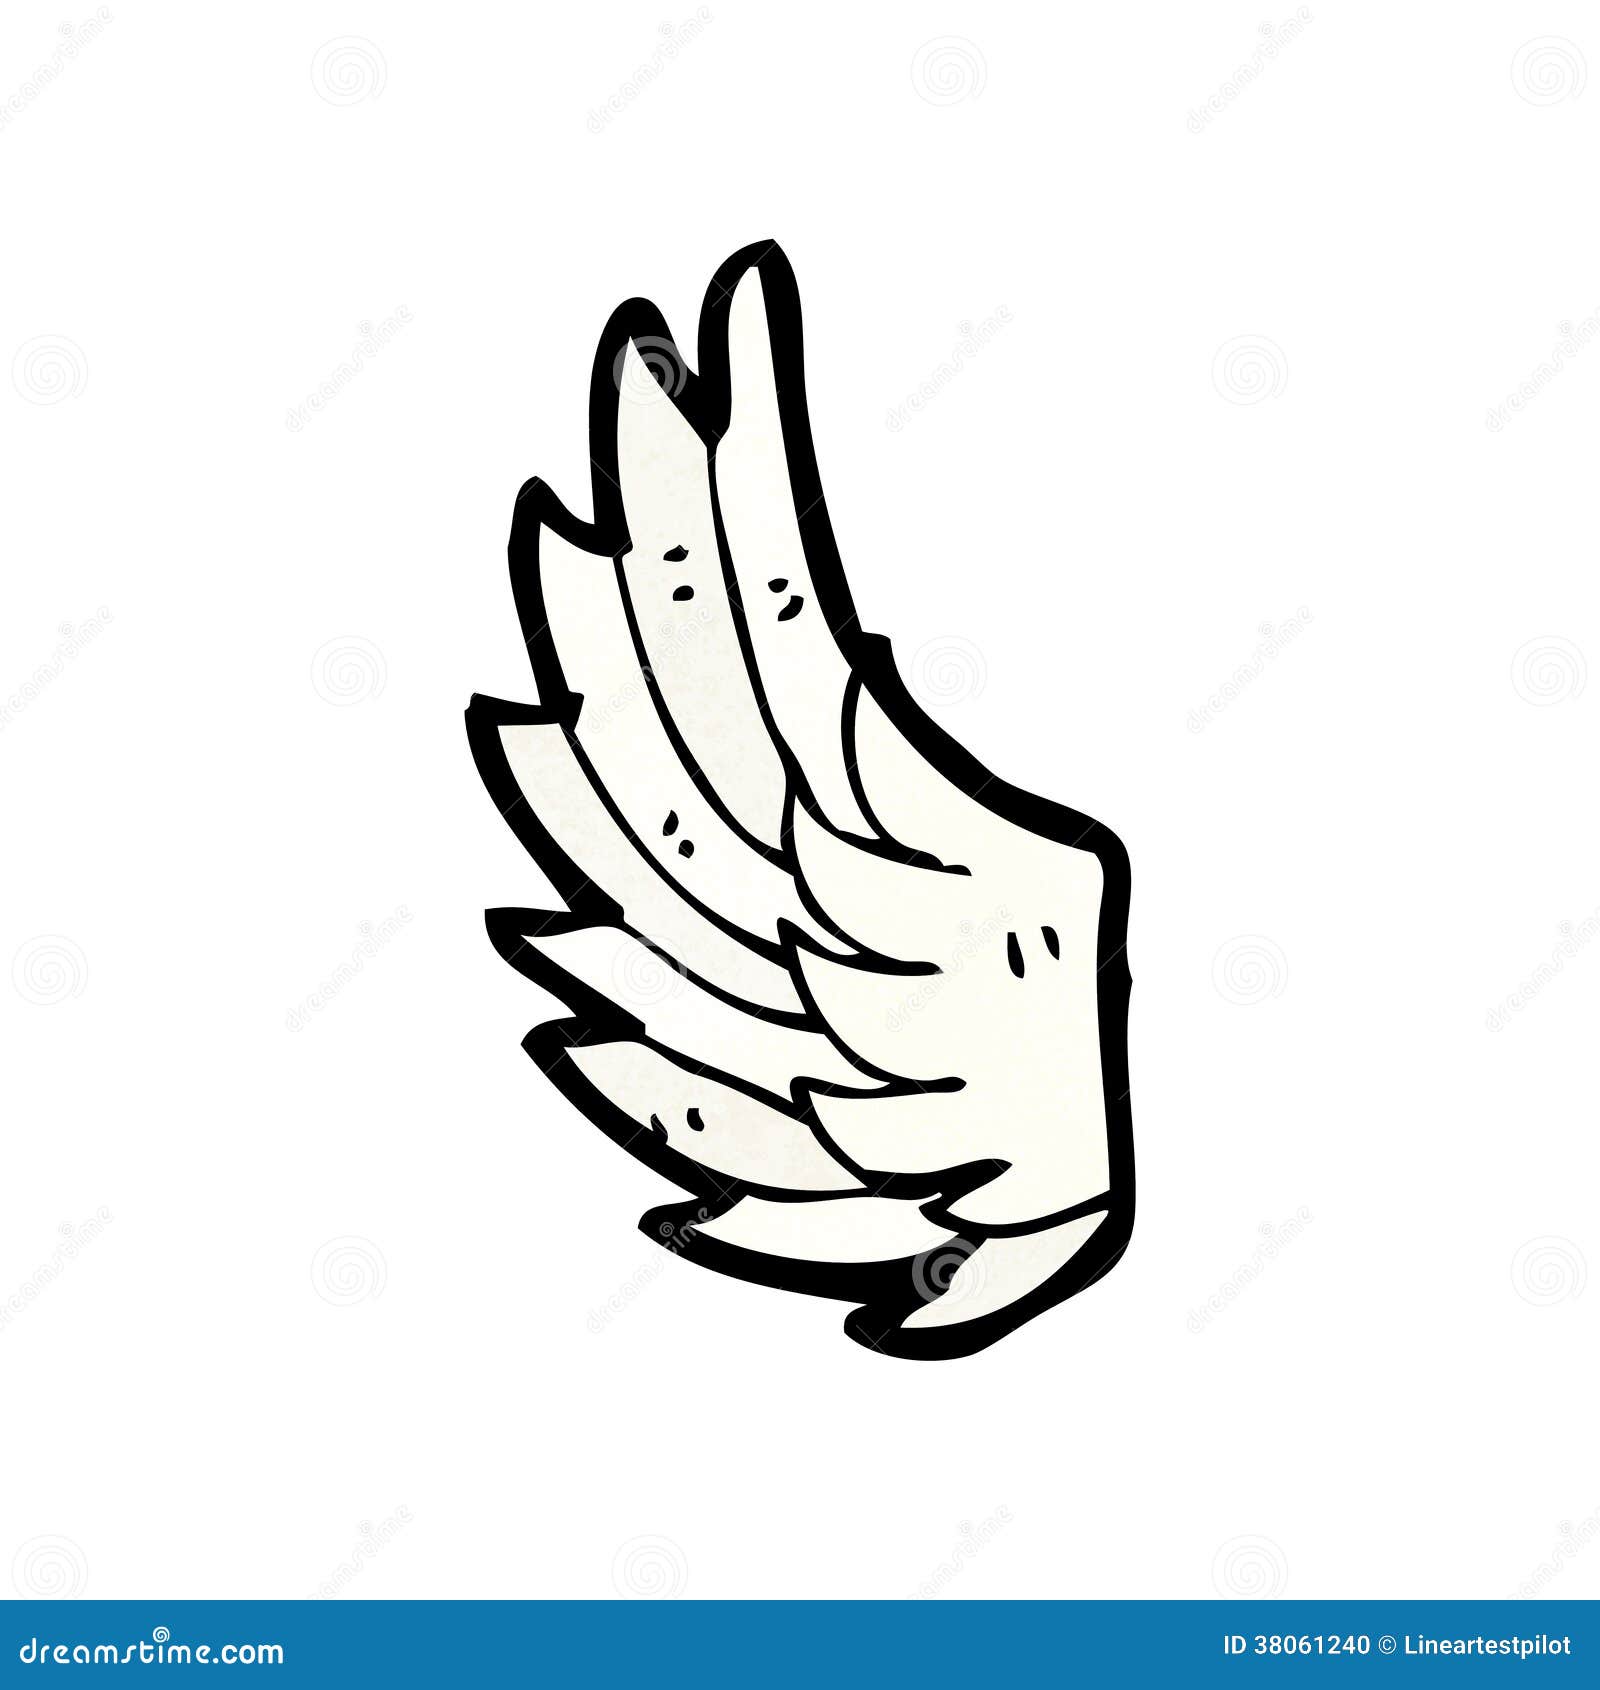 Cartoon angel wing stock vector. Illustration of sketch - 38061240